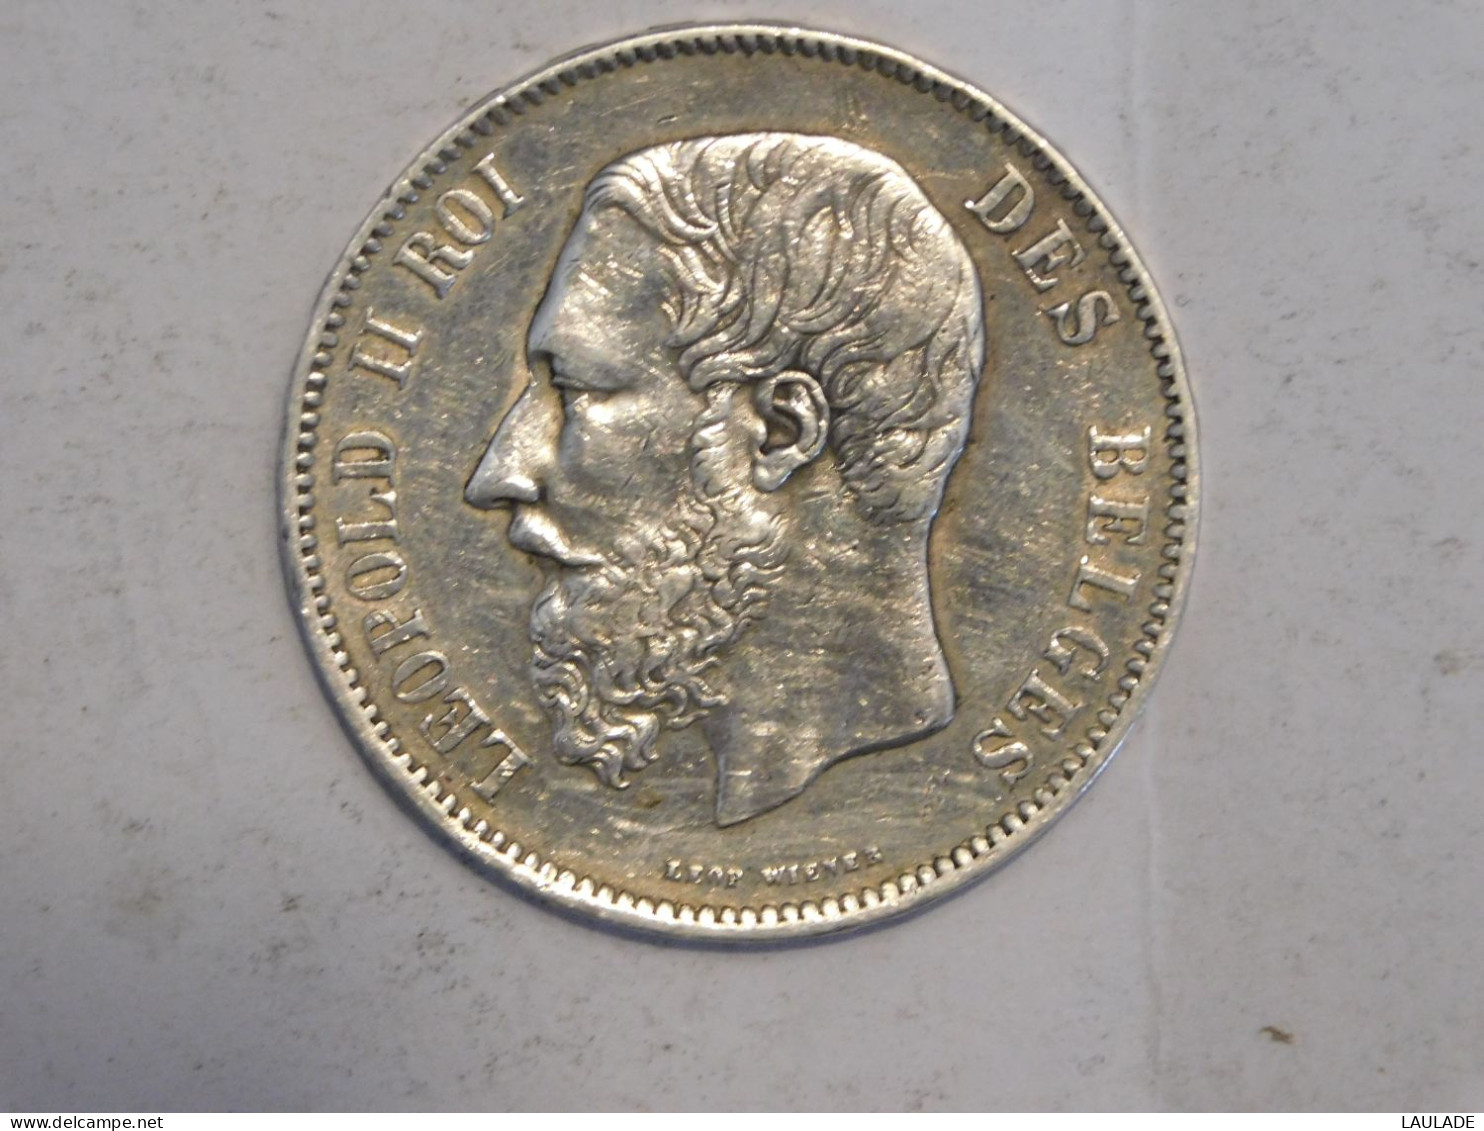 BELGIQUE 5 Francs 1870 - Silver, Argent - 5 Frank